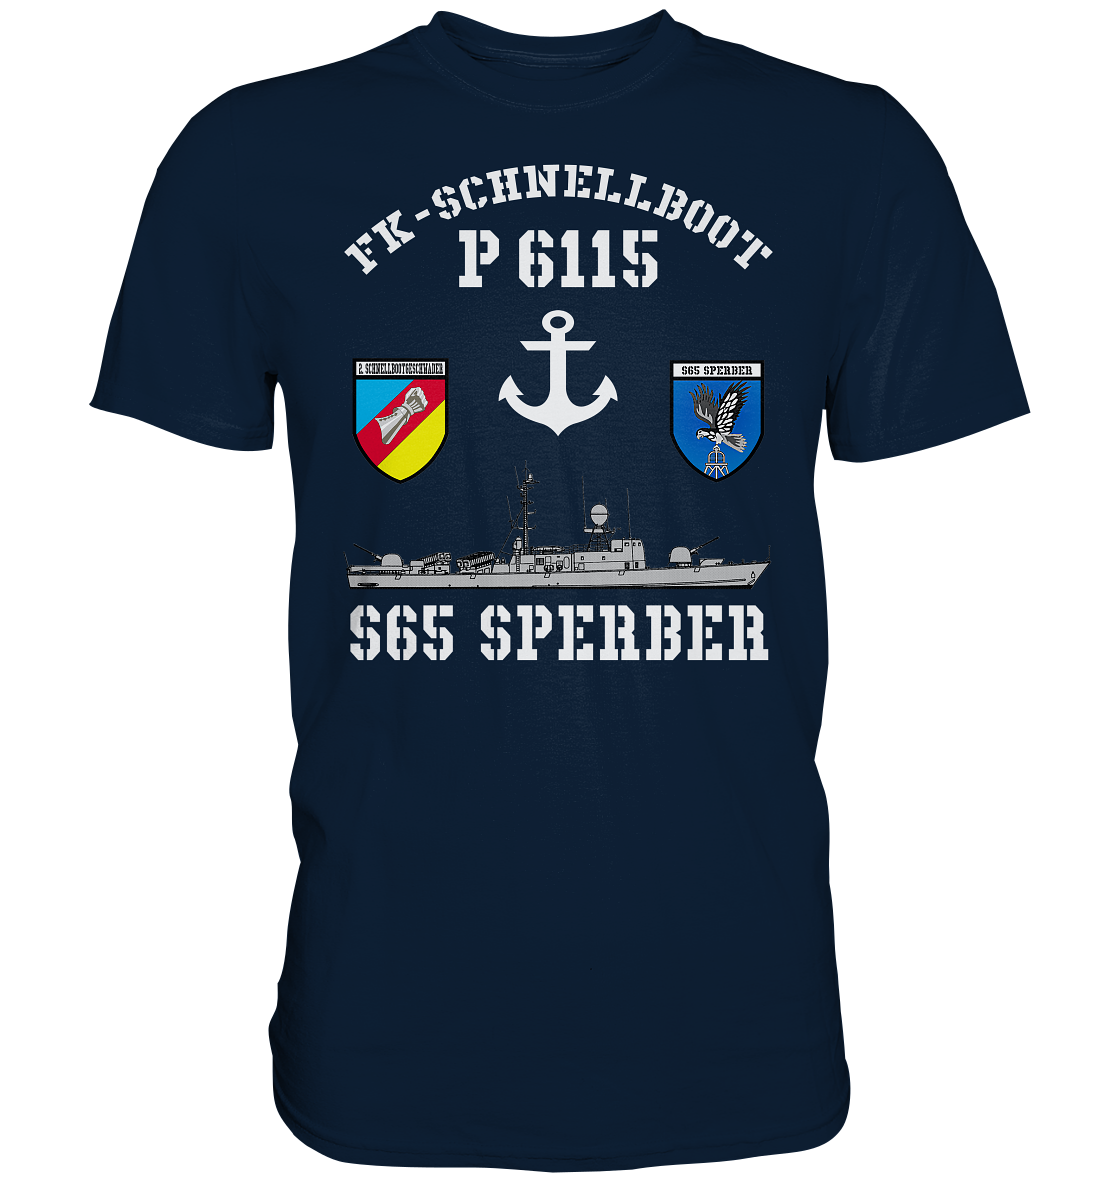 FK-Schnellboot P6115 SPERBER 2.SG Anker - Premium Shirt